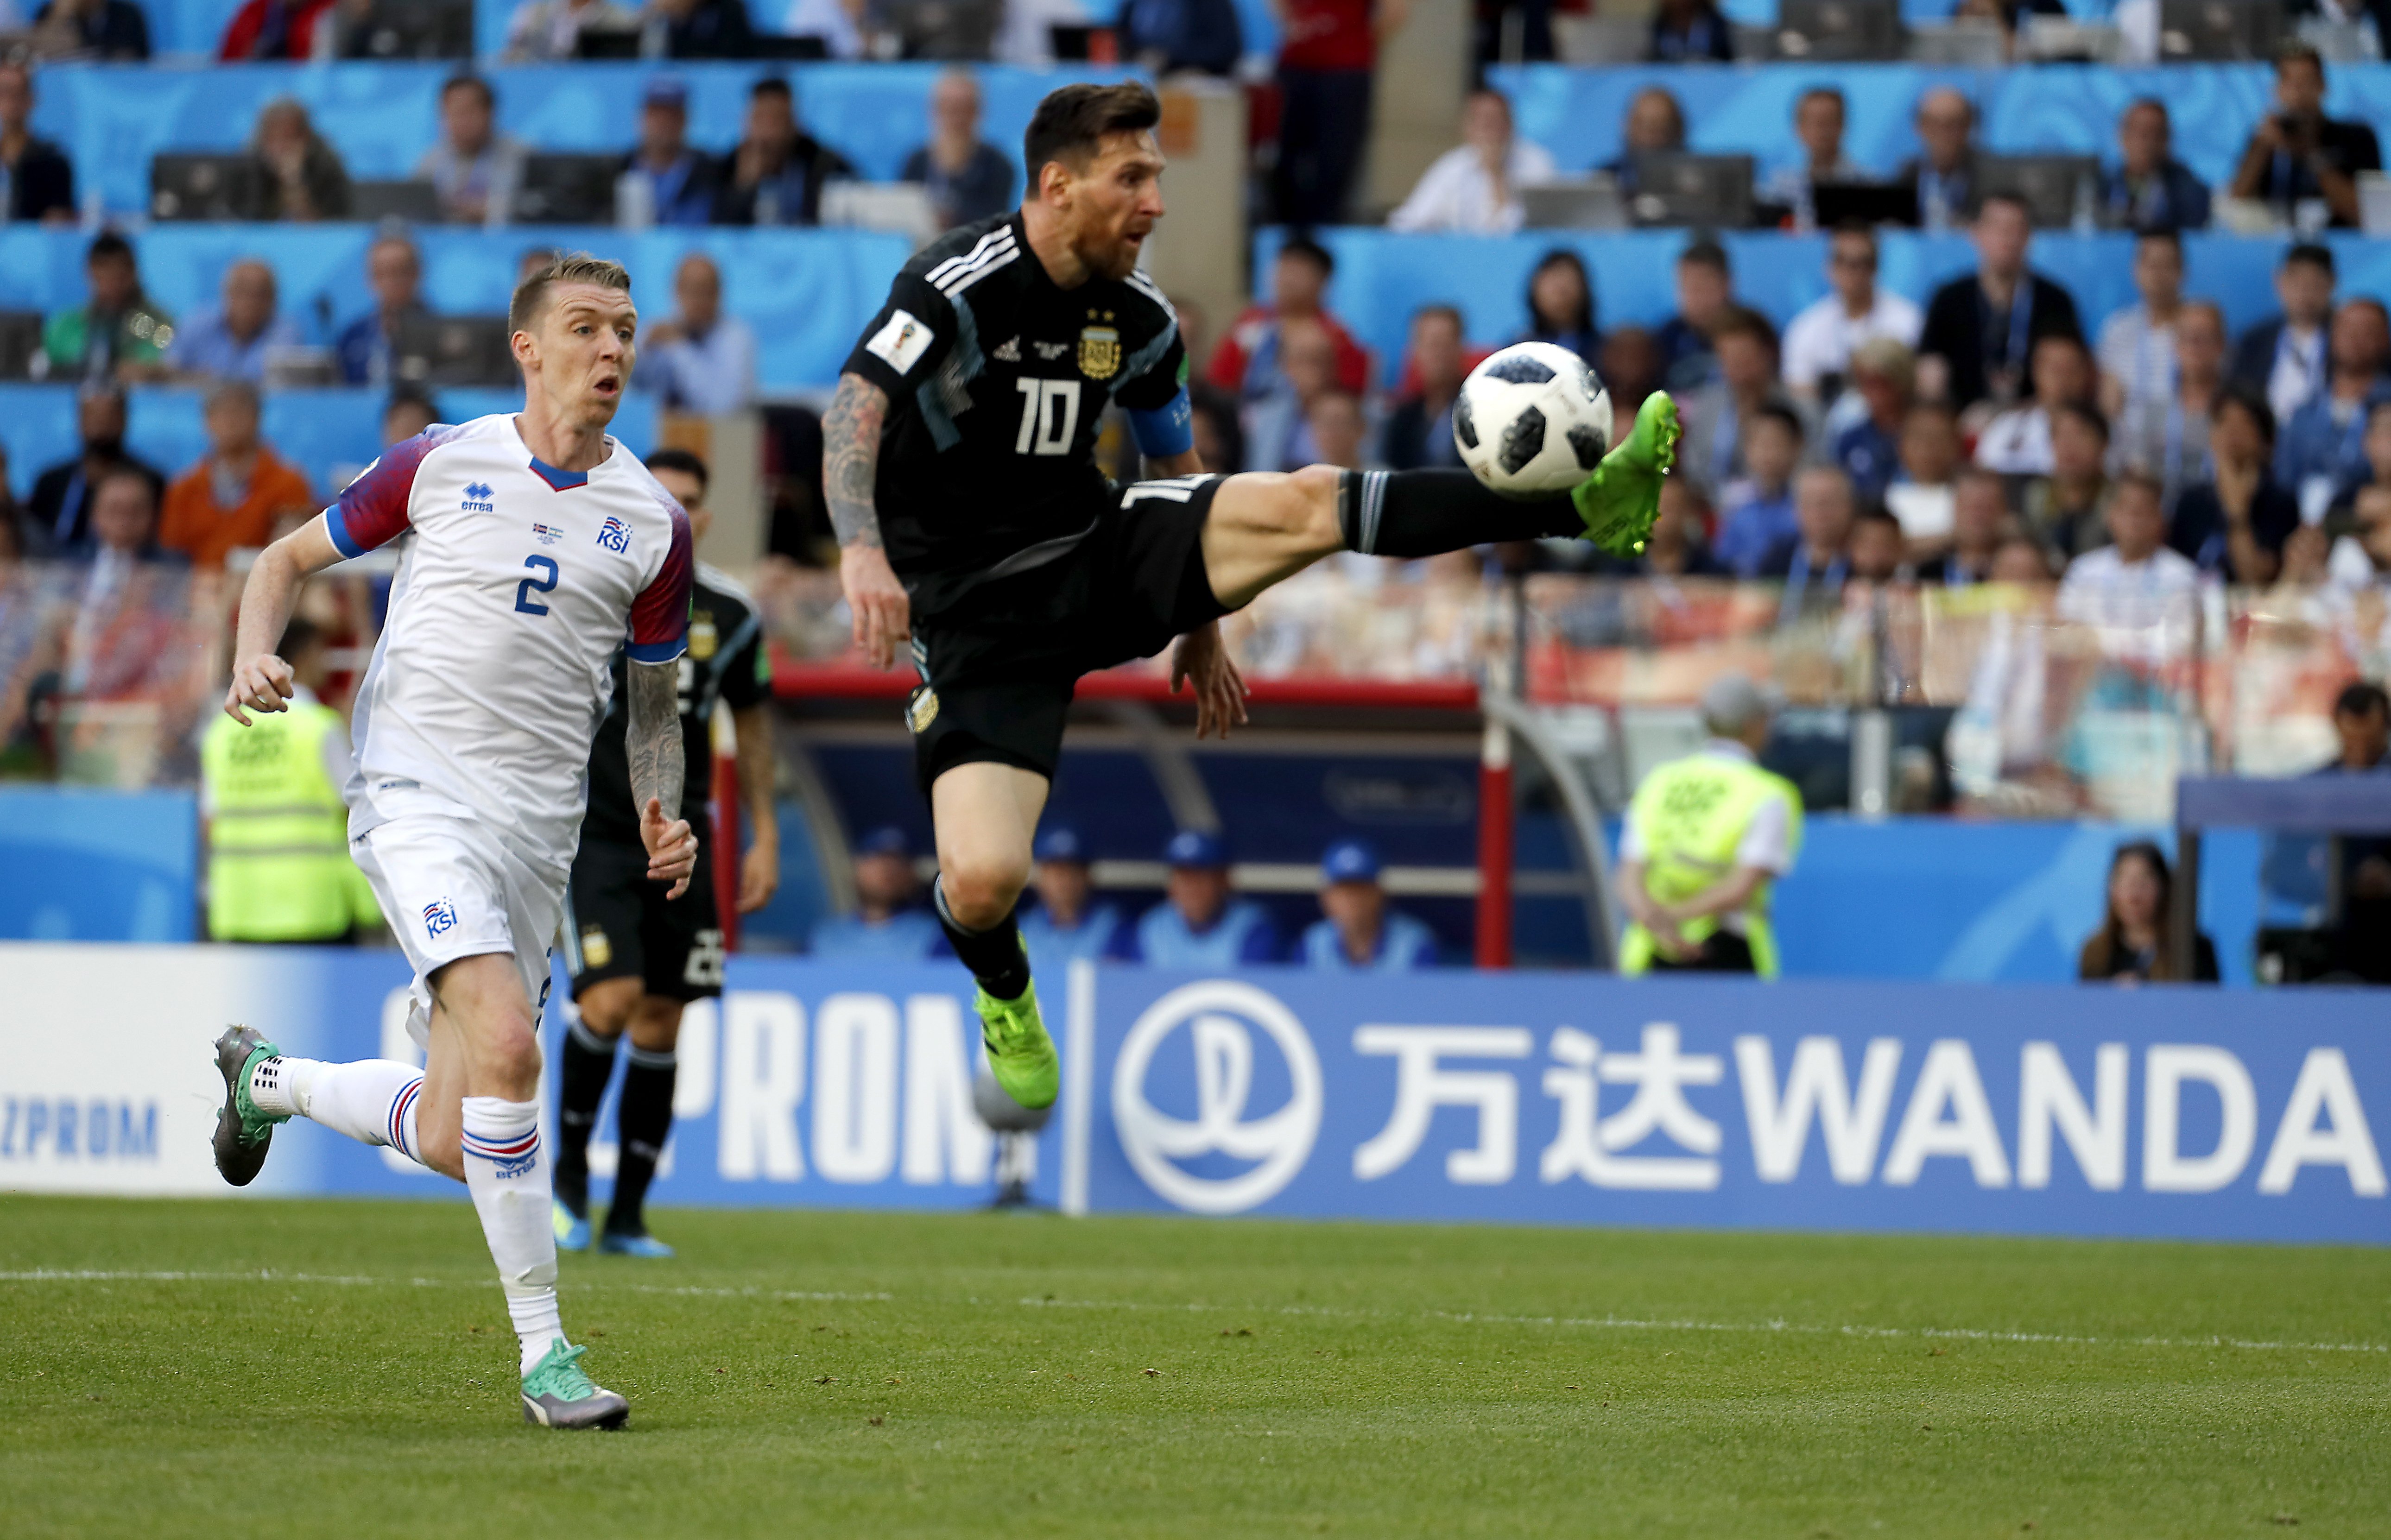 Messi falha penálti e Argentina empata com Islândia